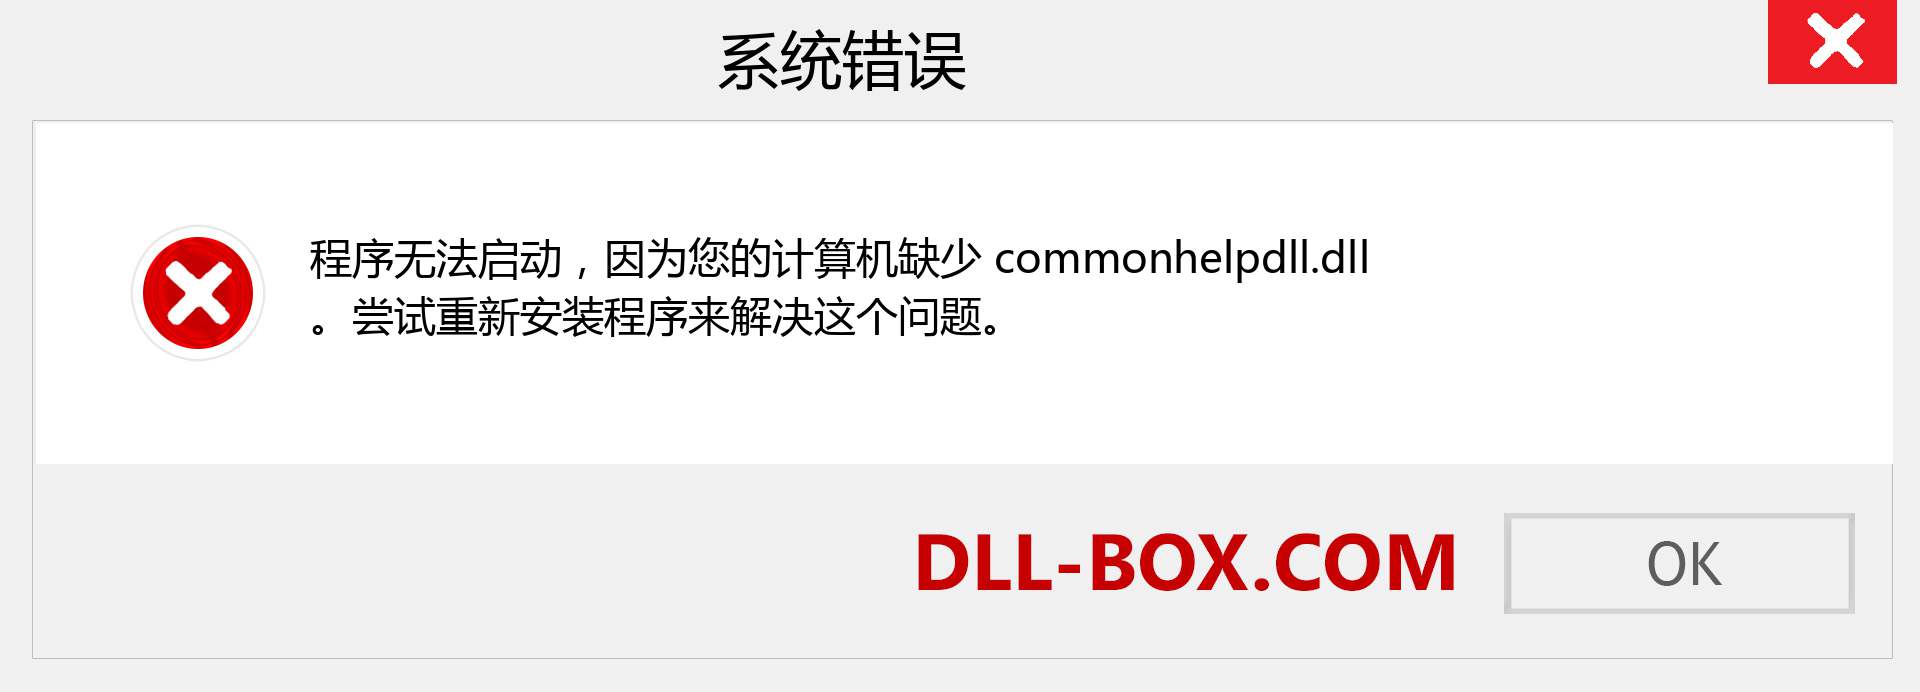 commonhelpdll.dll 文件丢失？。 适用于 Windows 7、8、10 的下载 - 修复 Windows、照片、图像上的 commonhelpdll dll 丢失错误